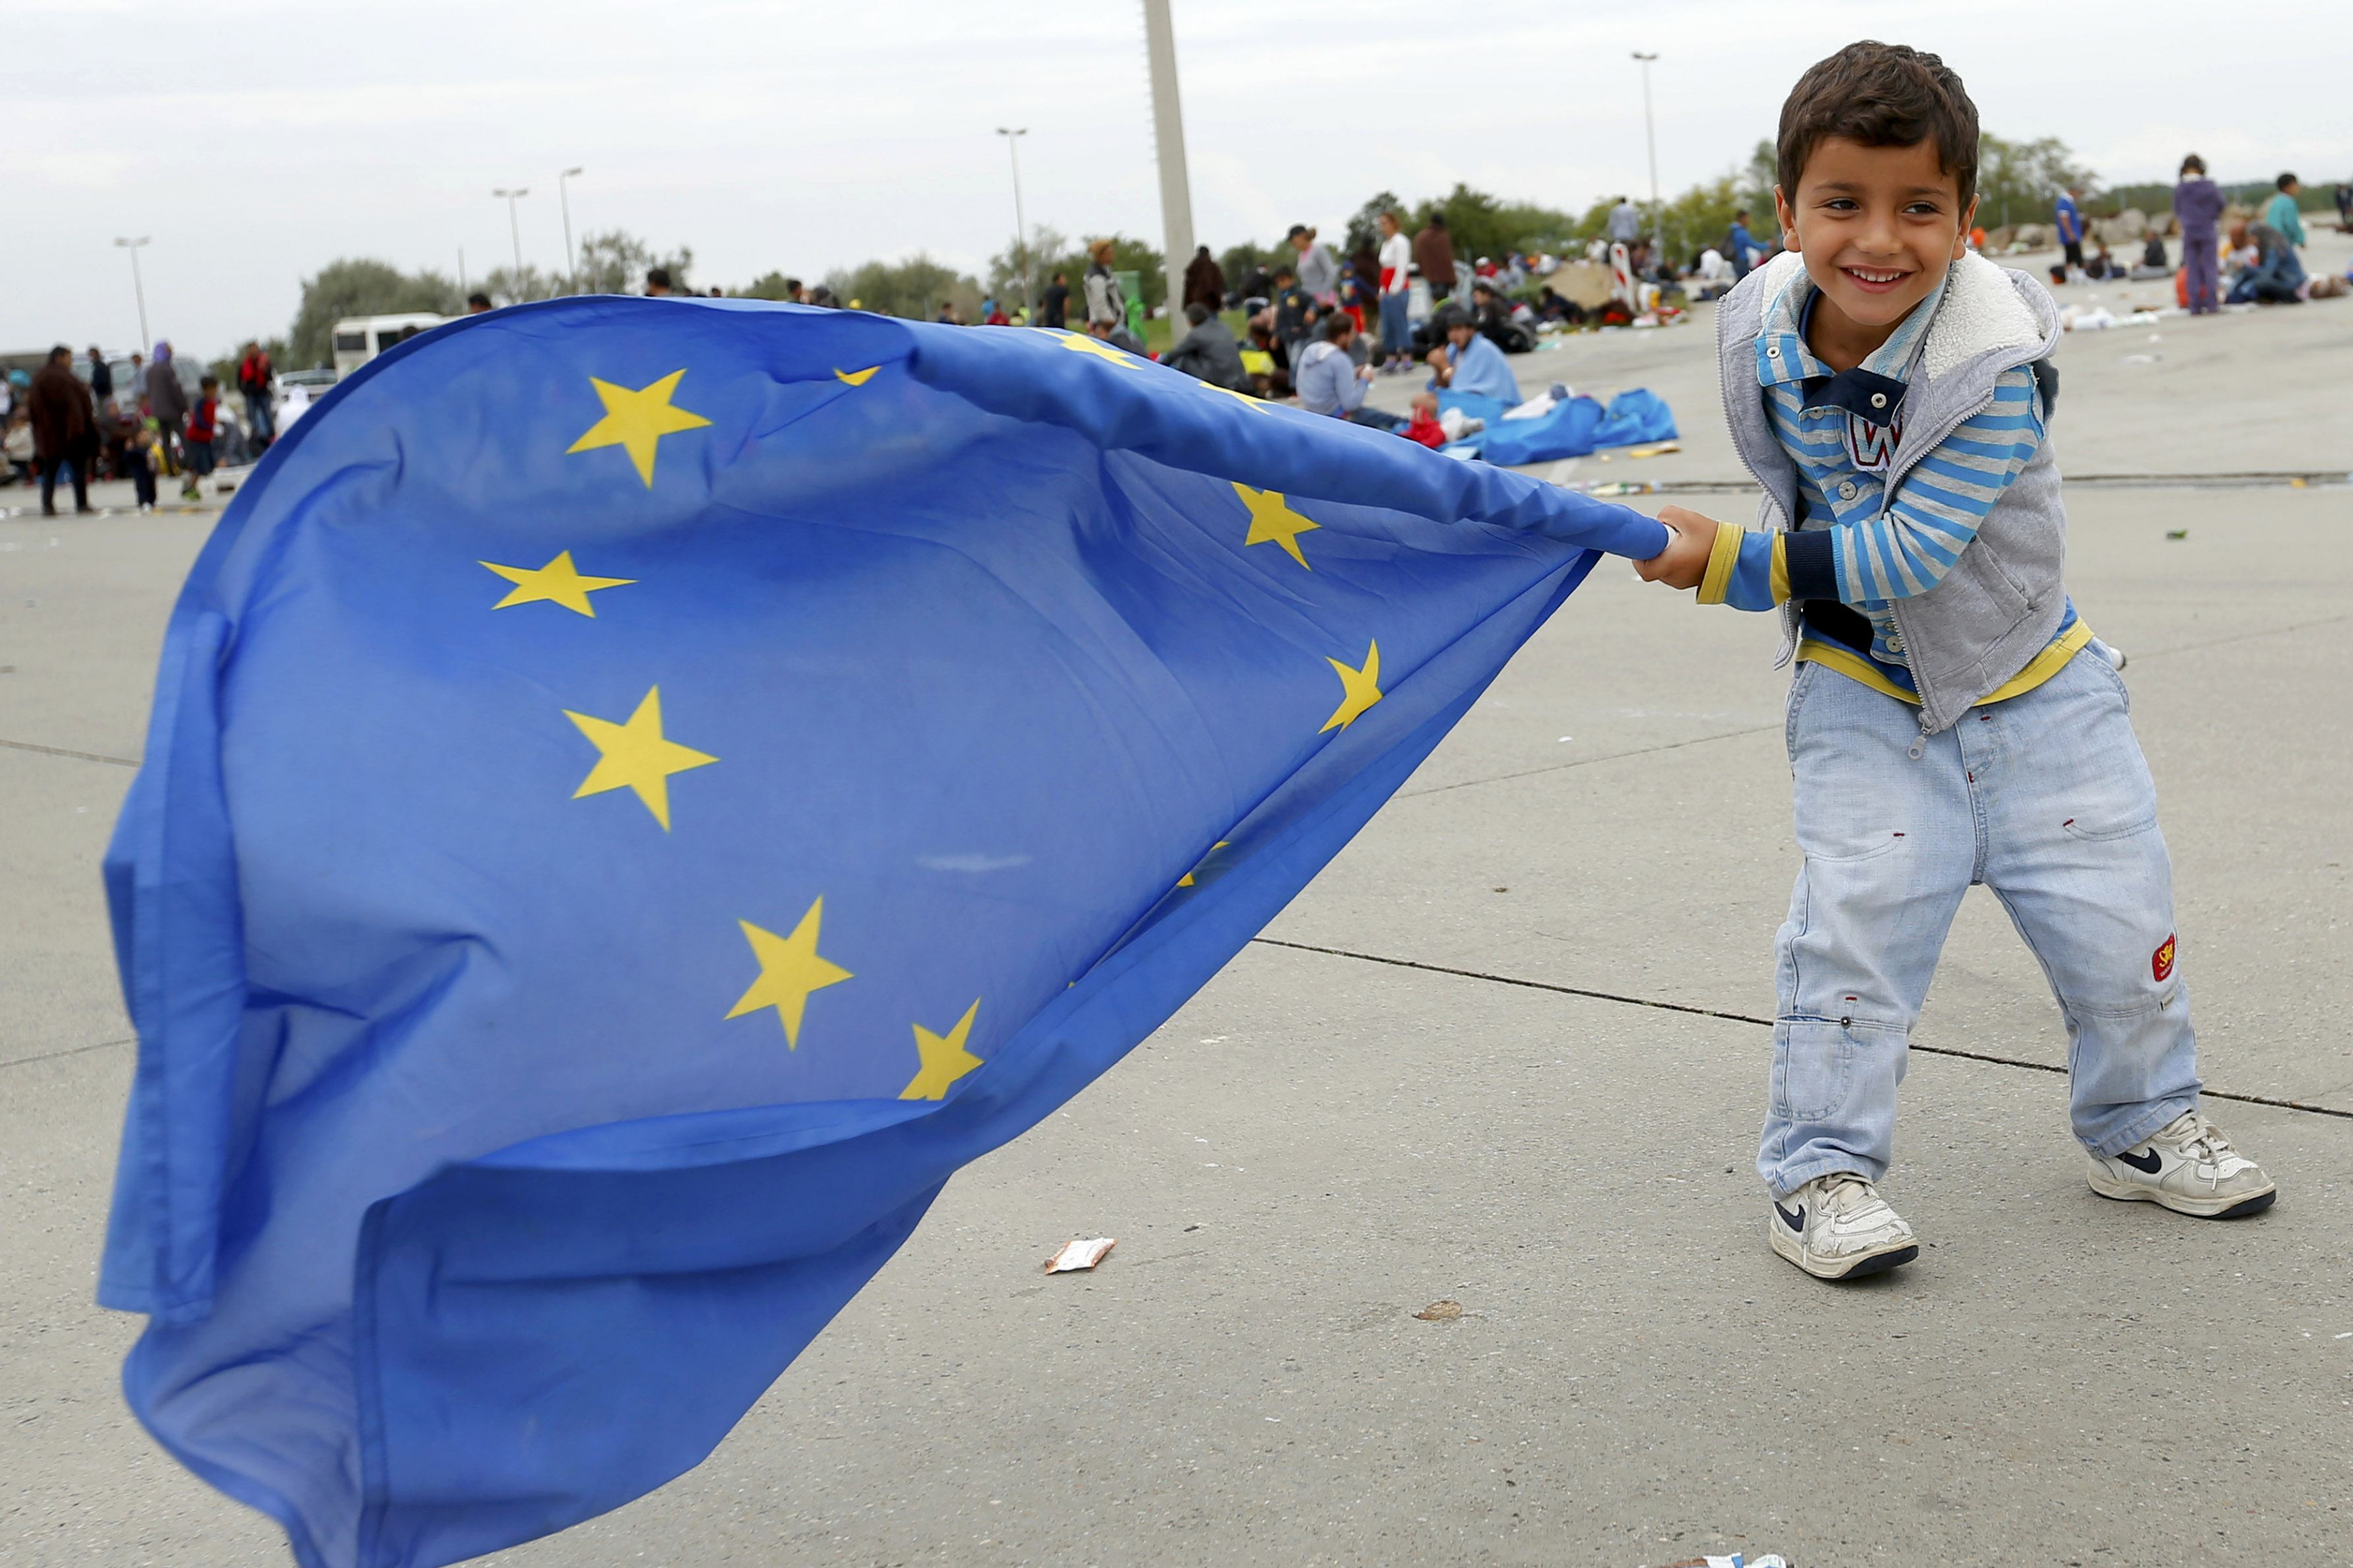 Crisis de Refugiados: Europa debe actuar ya